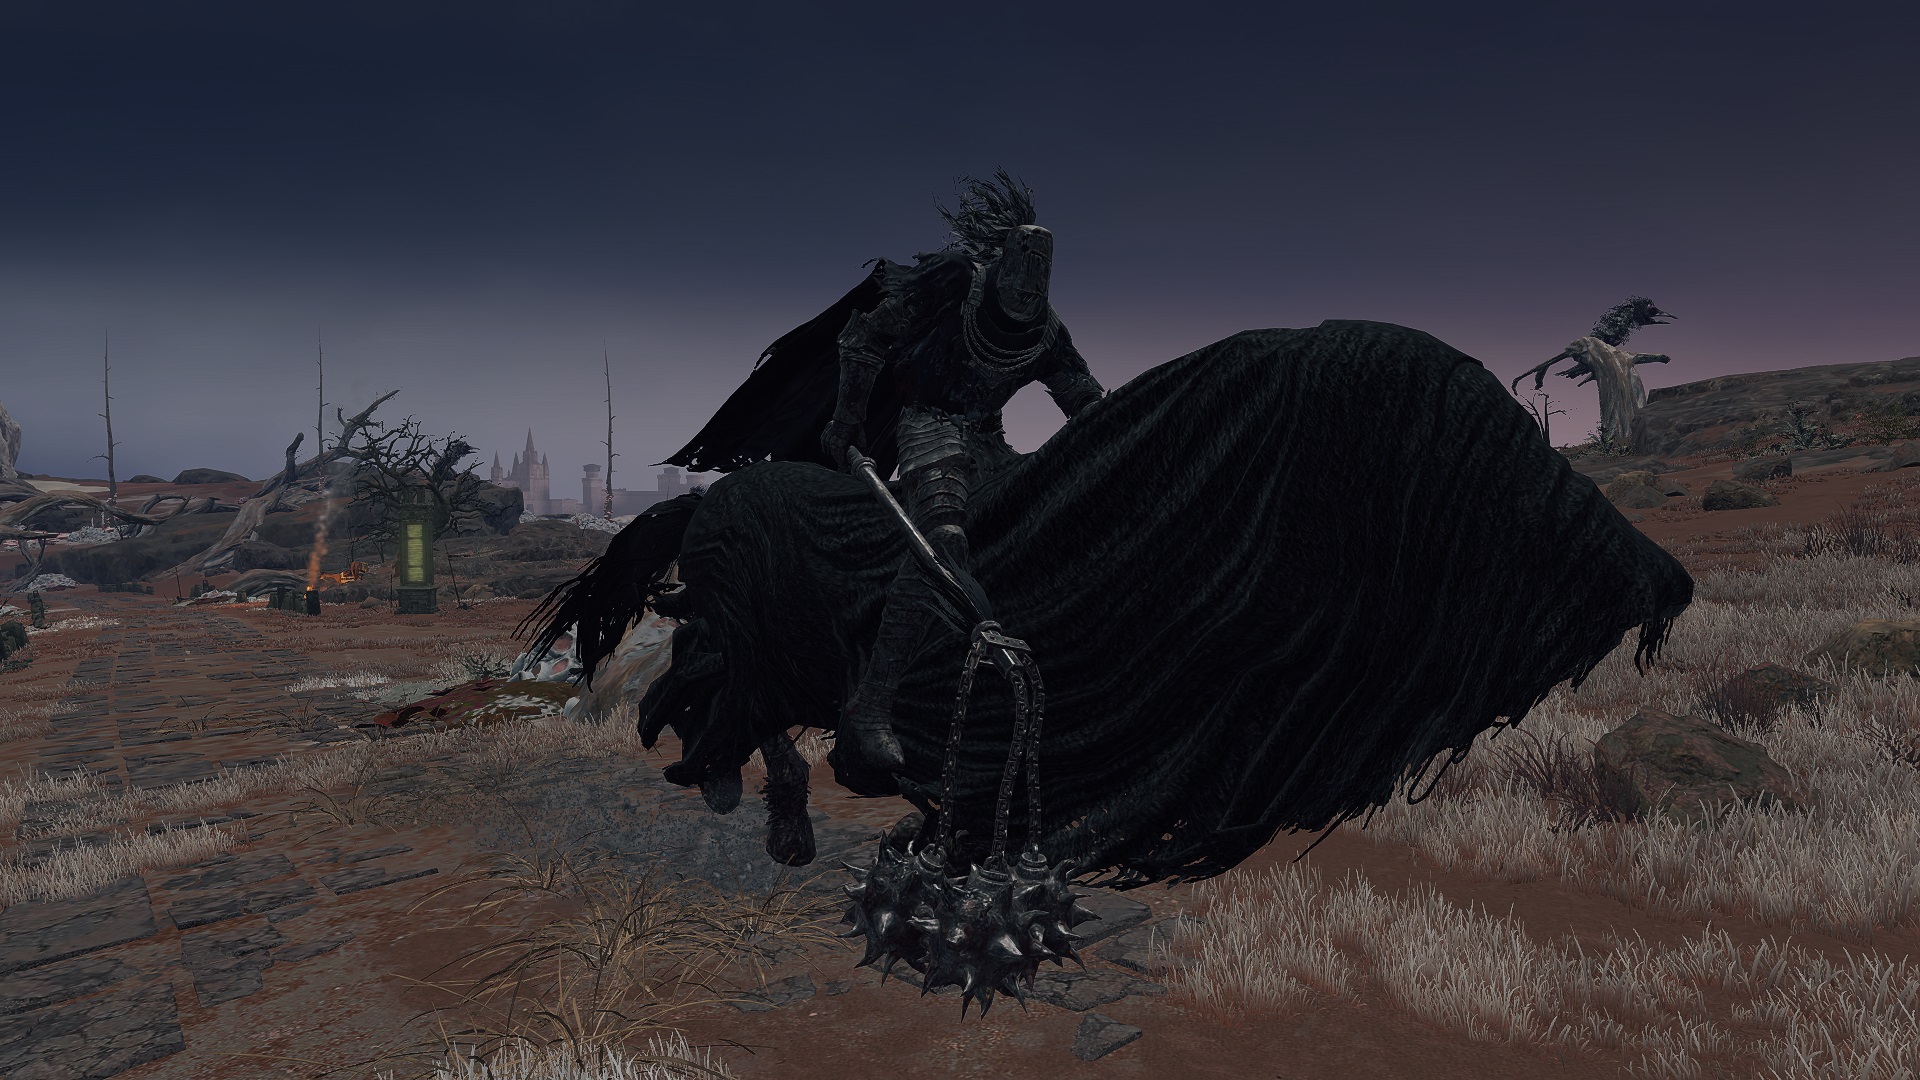 Elden ring black horse knight